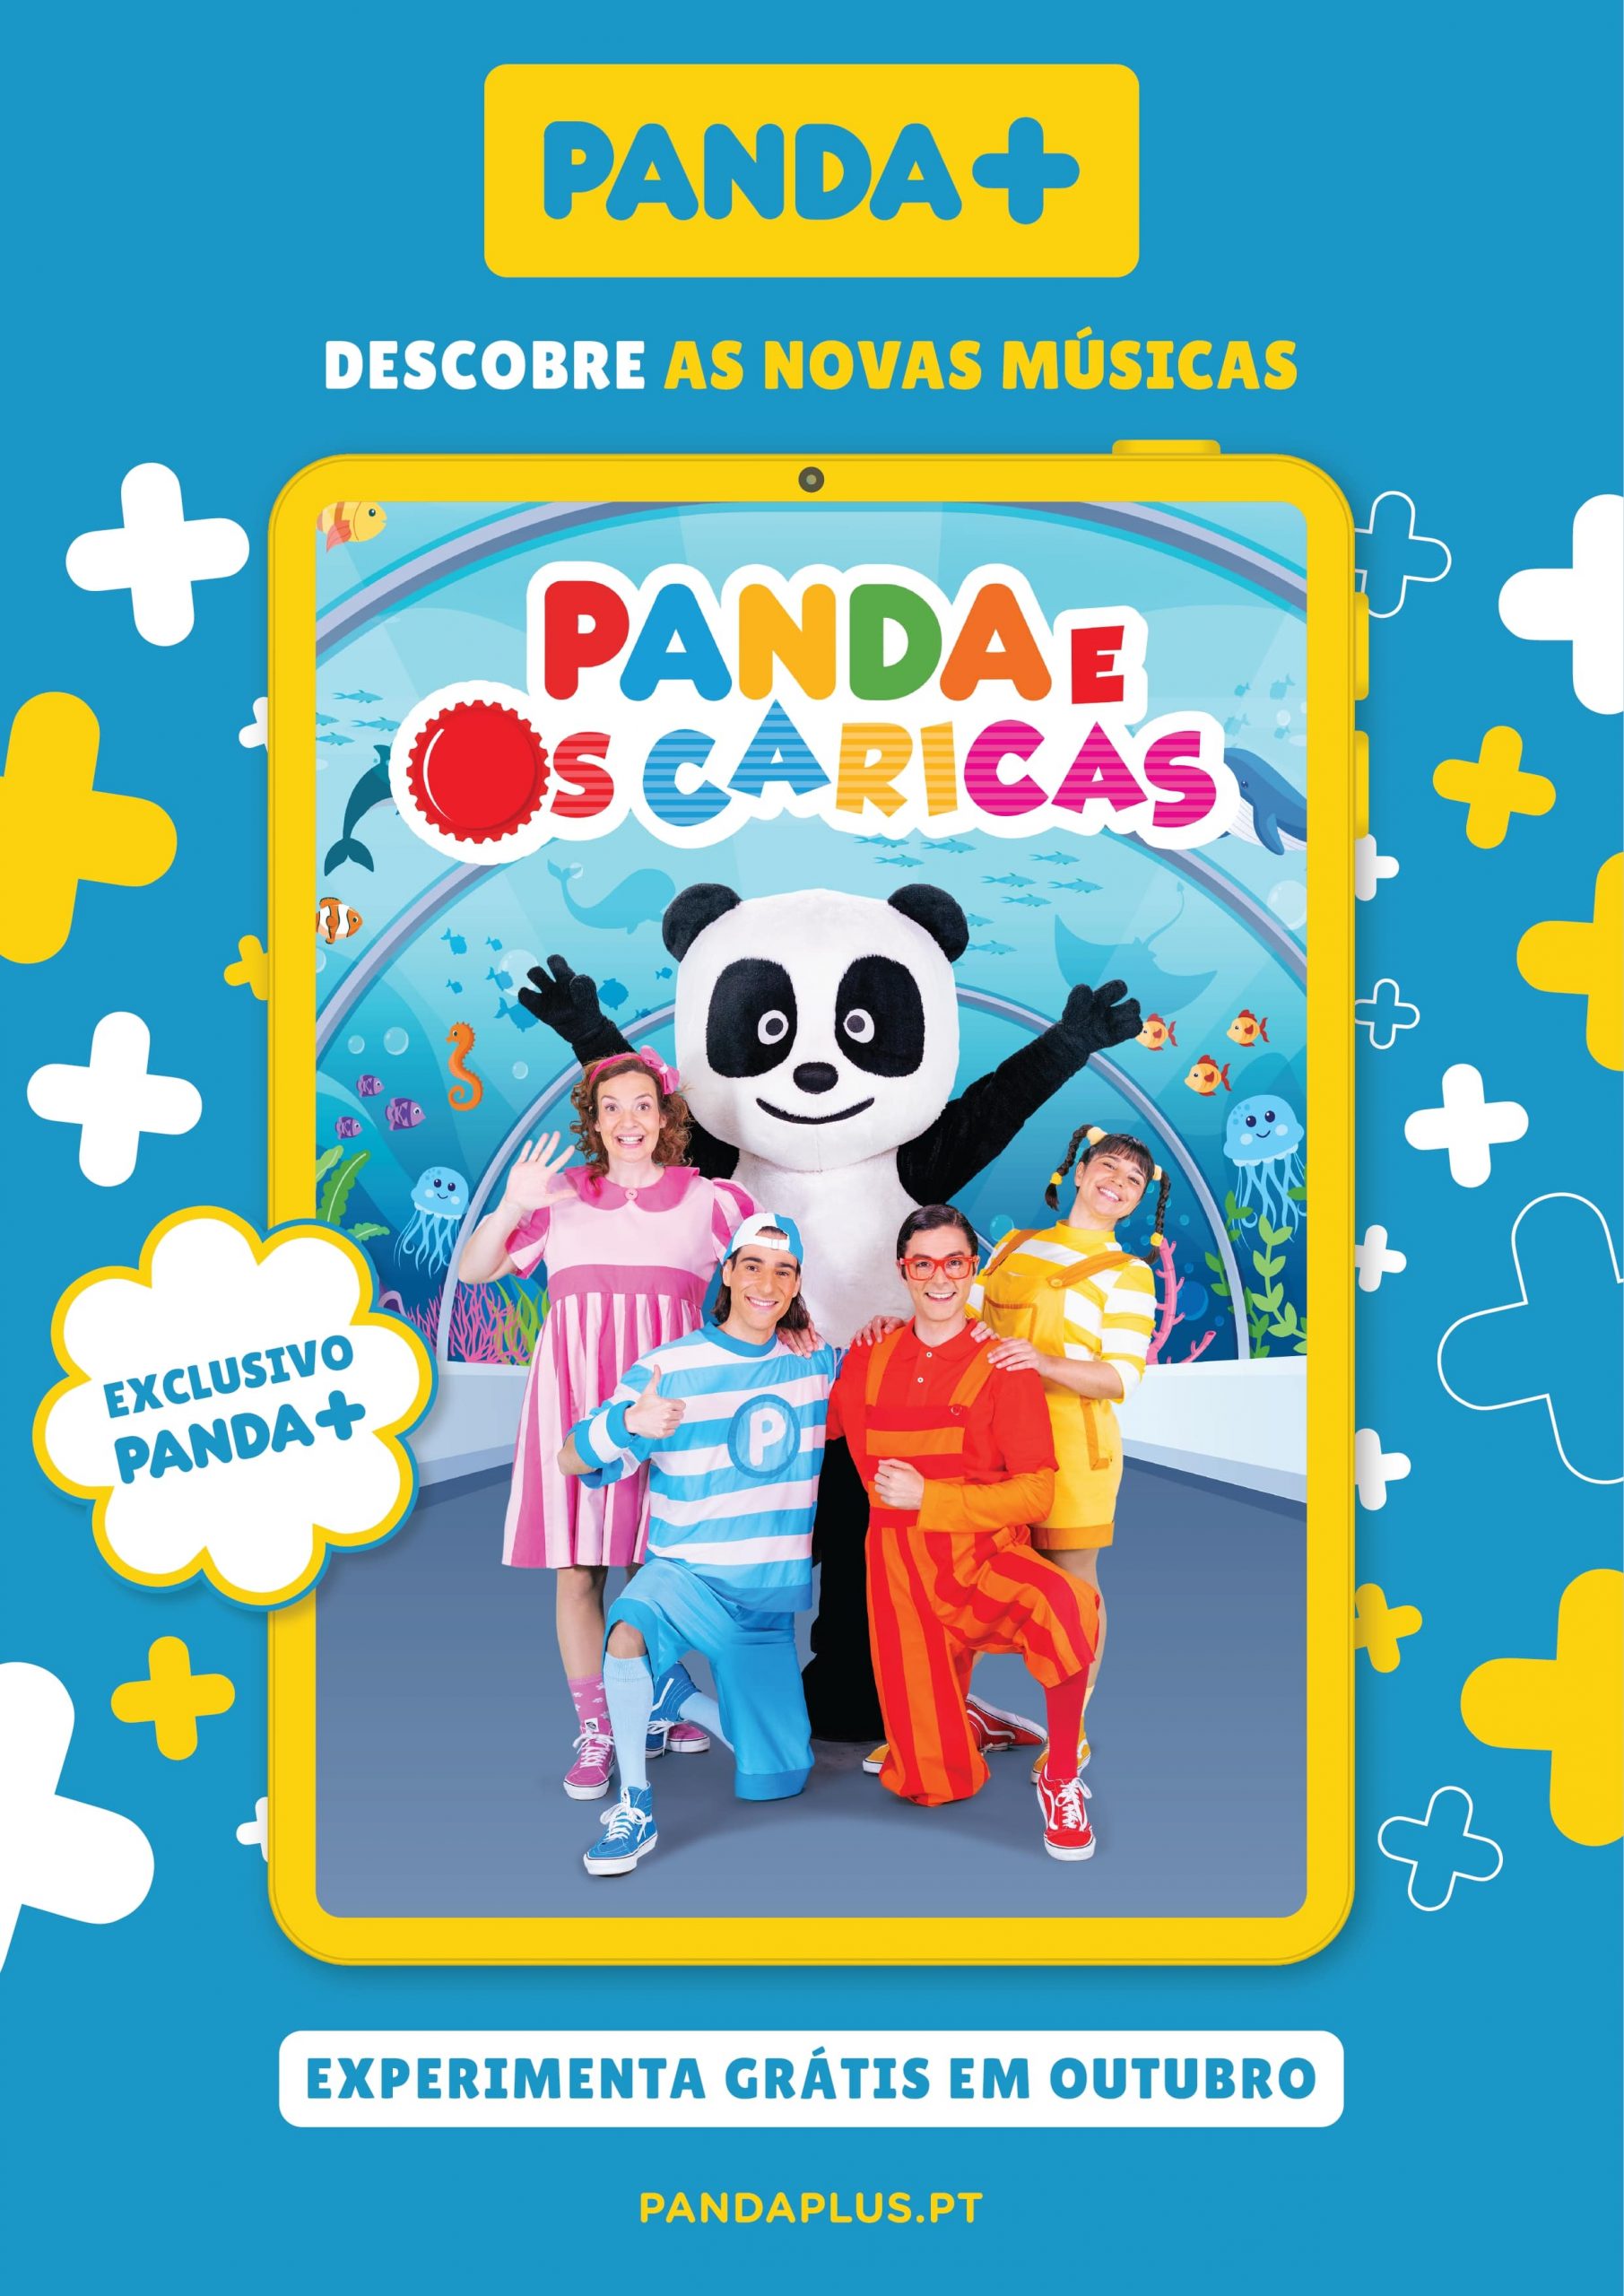 Canal Panda Portugal lança novos ep. de Monchhichi - Ypsilon Licensing